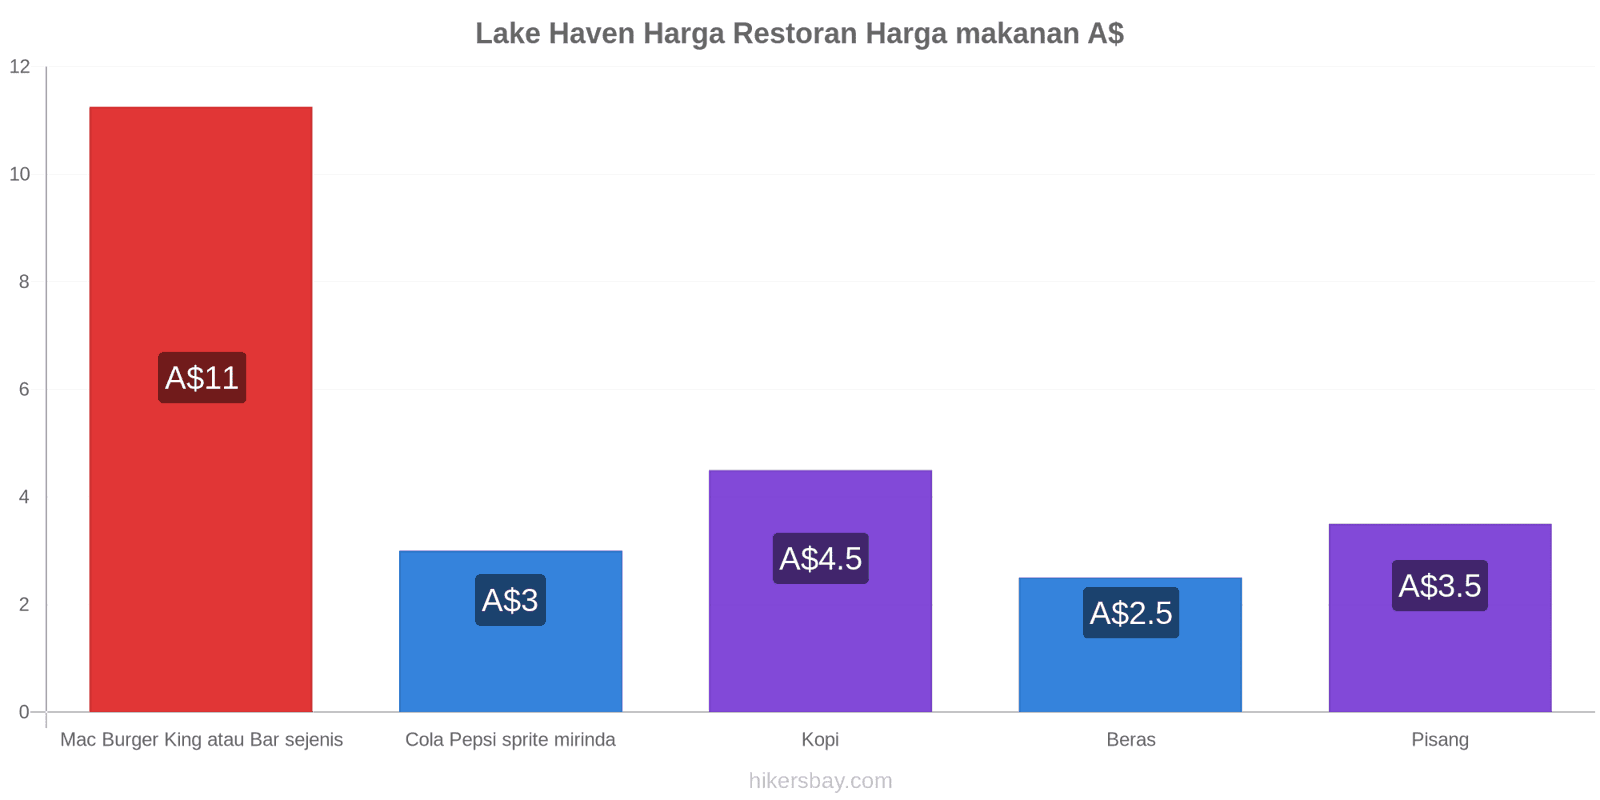 Lake Haven perubahan harga hikersbay.com